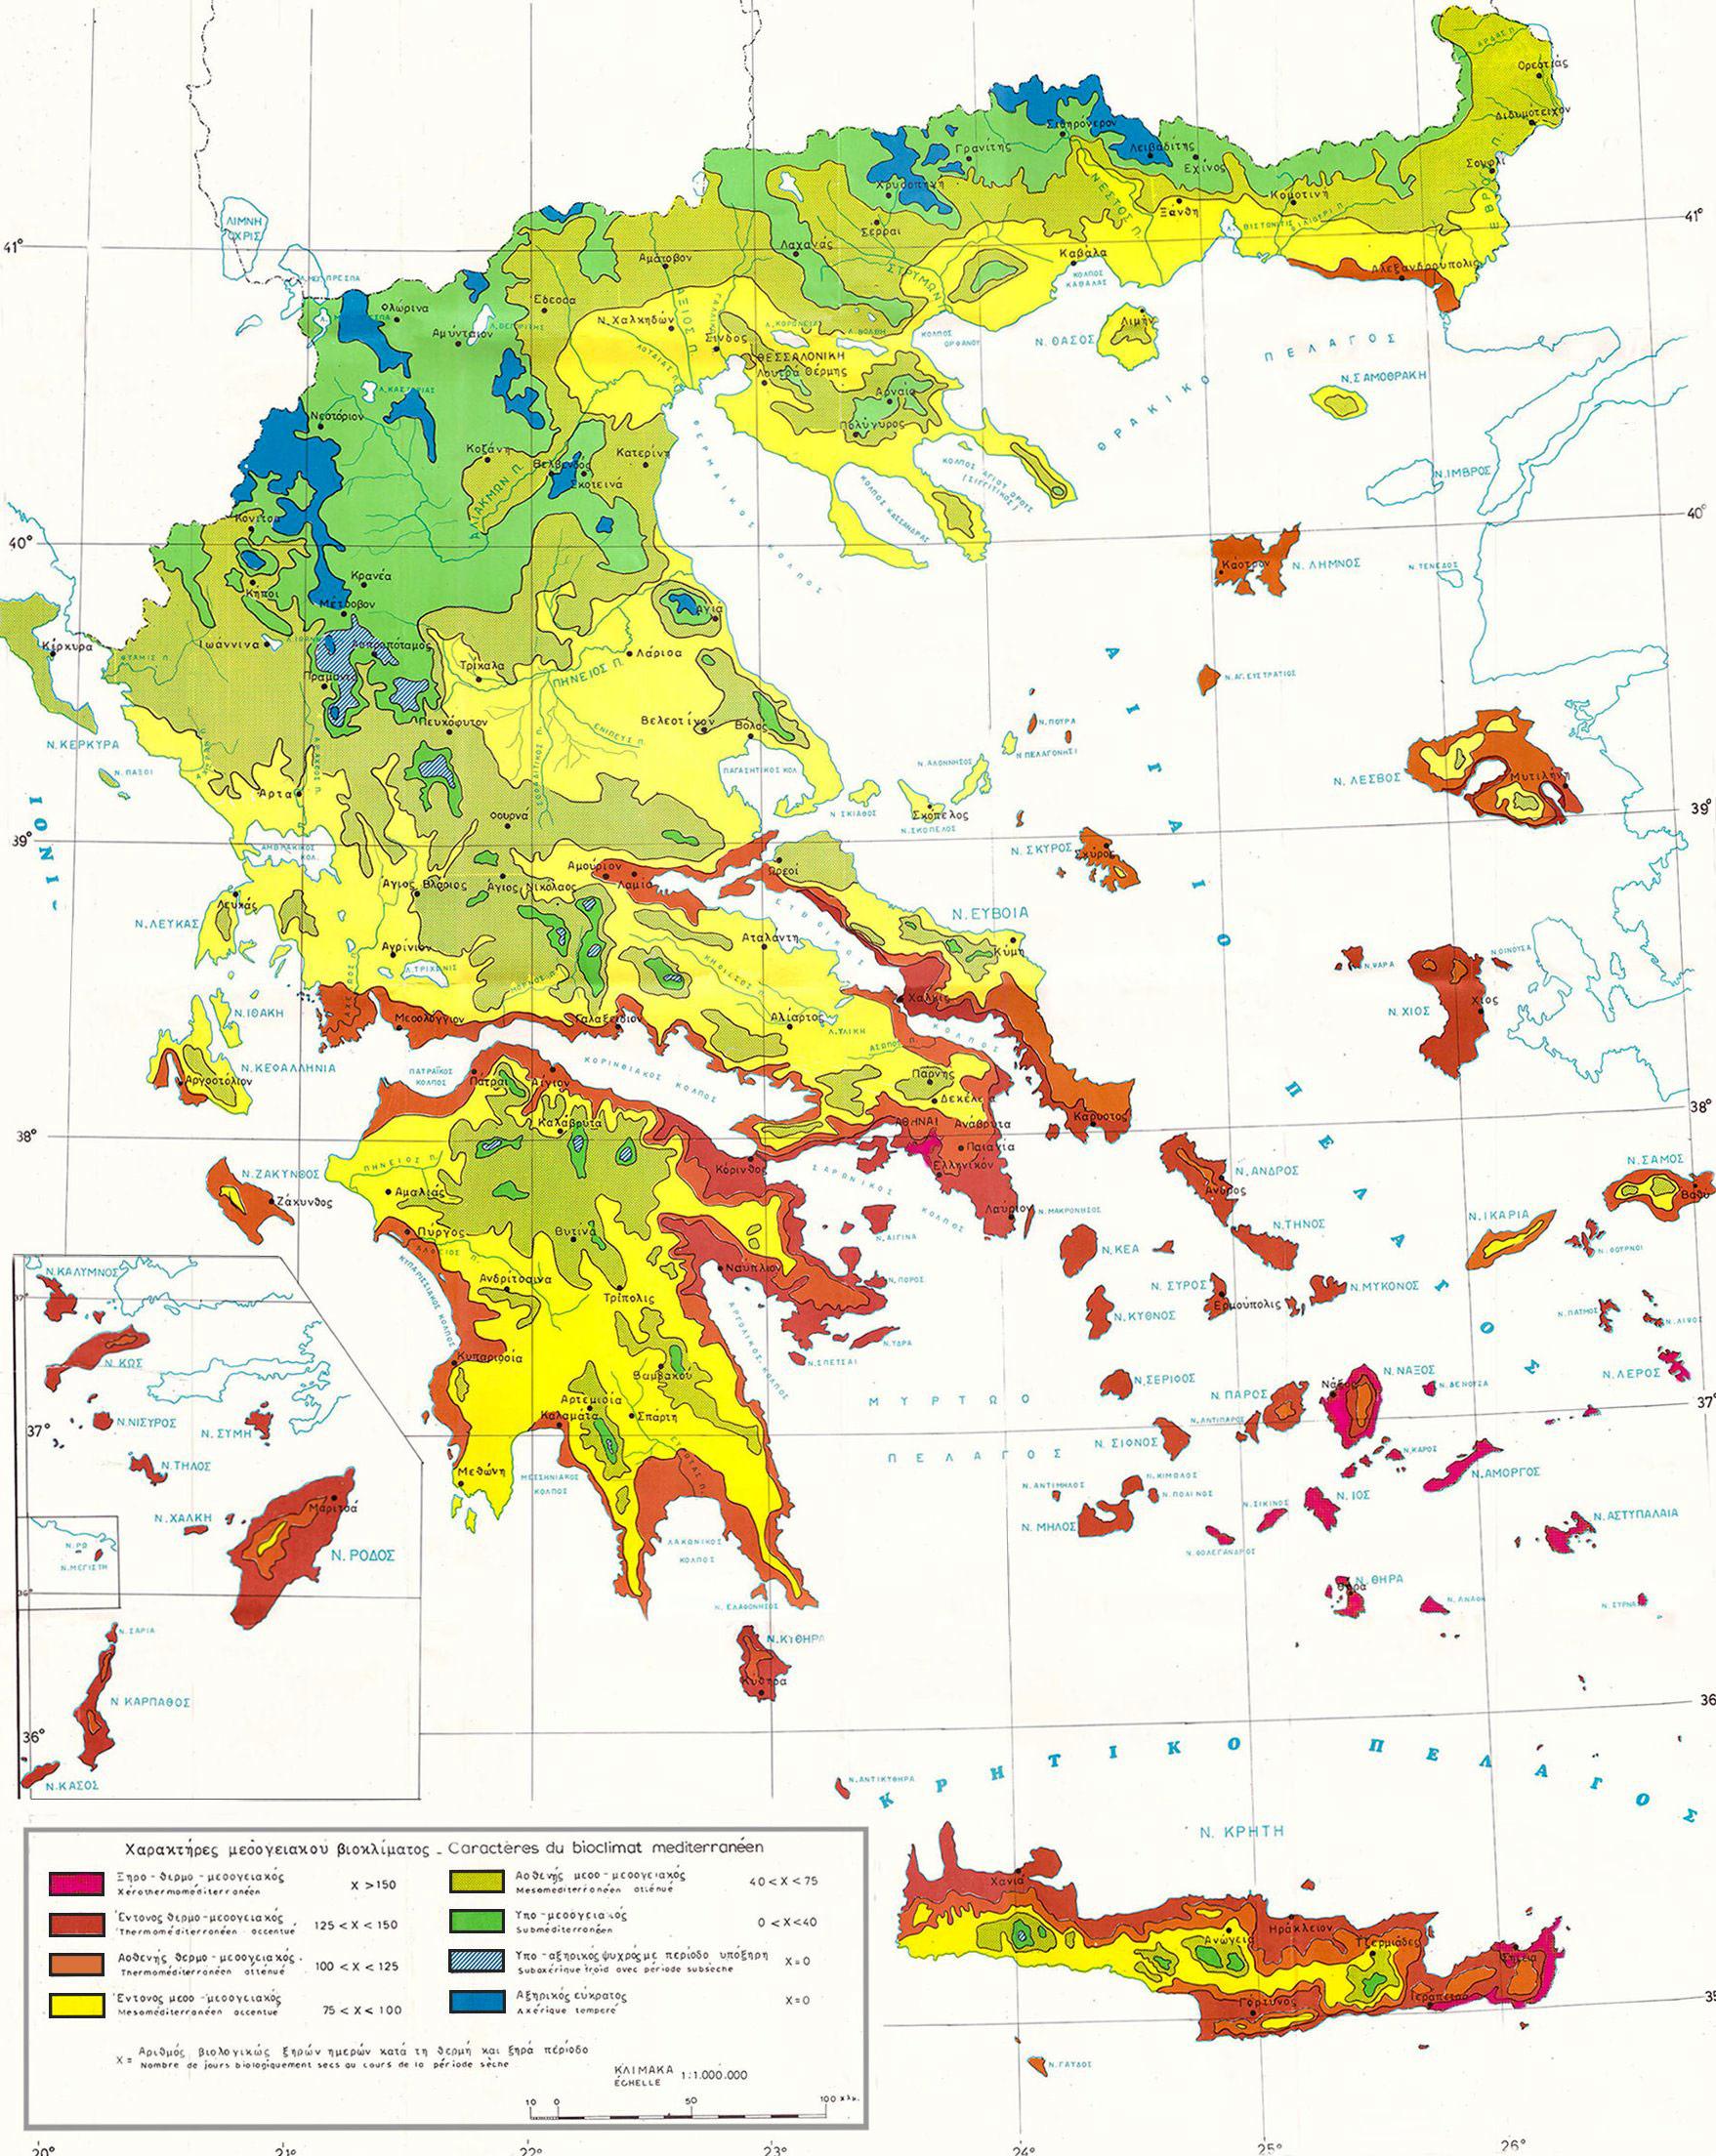 bioclima map